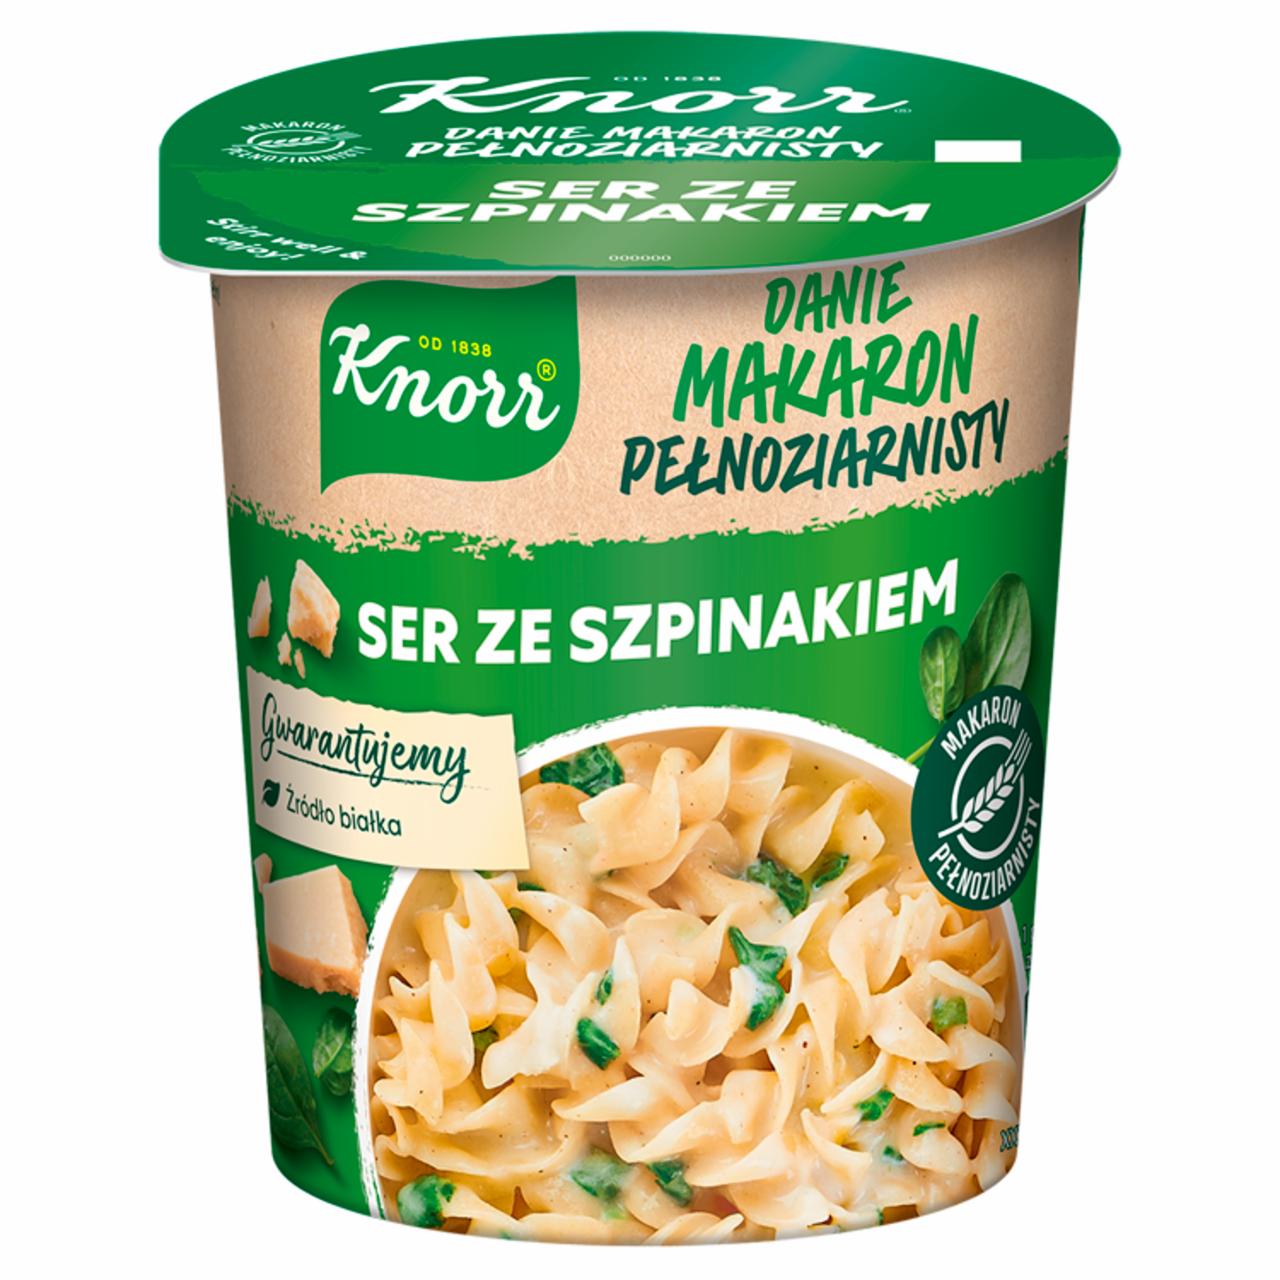 Zdjęcia - Knorr Danie makaron pełnoziarnisty ser ze szpinakiem 60 g